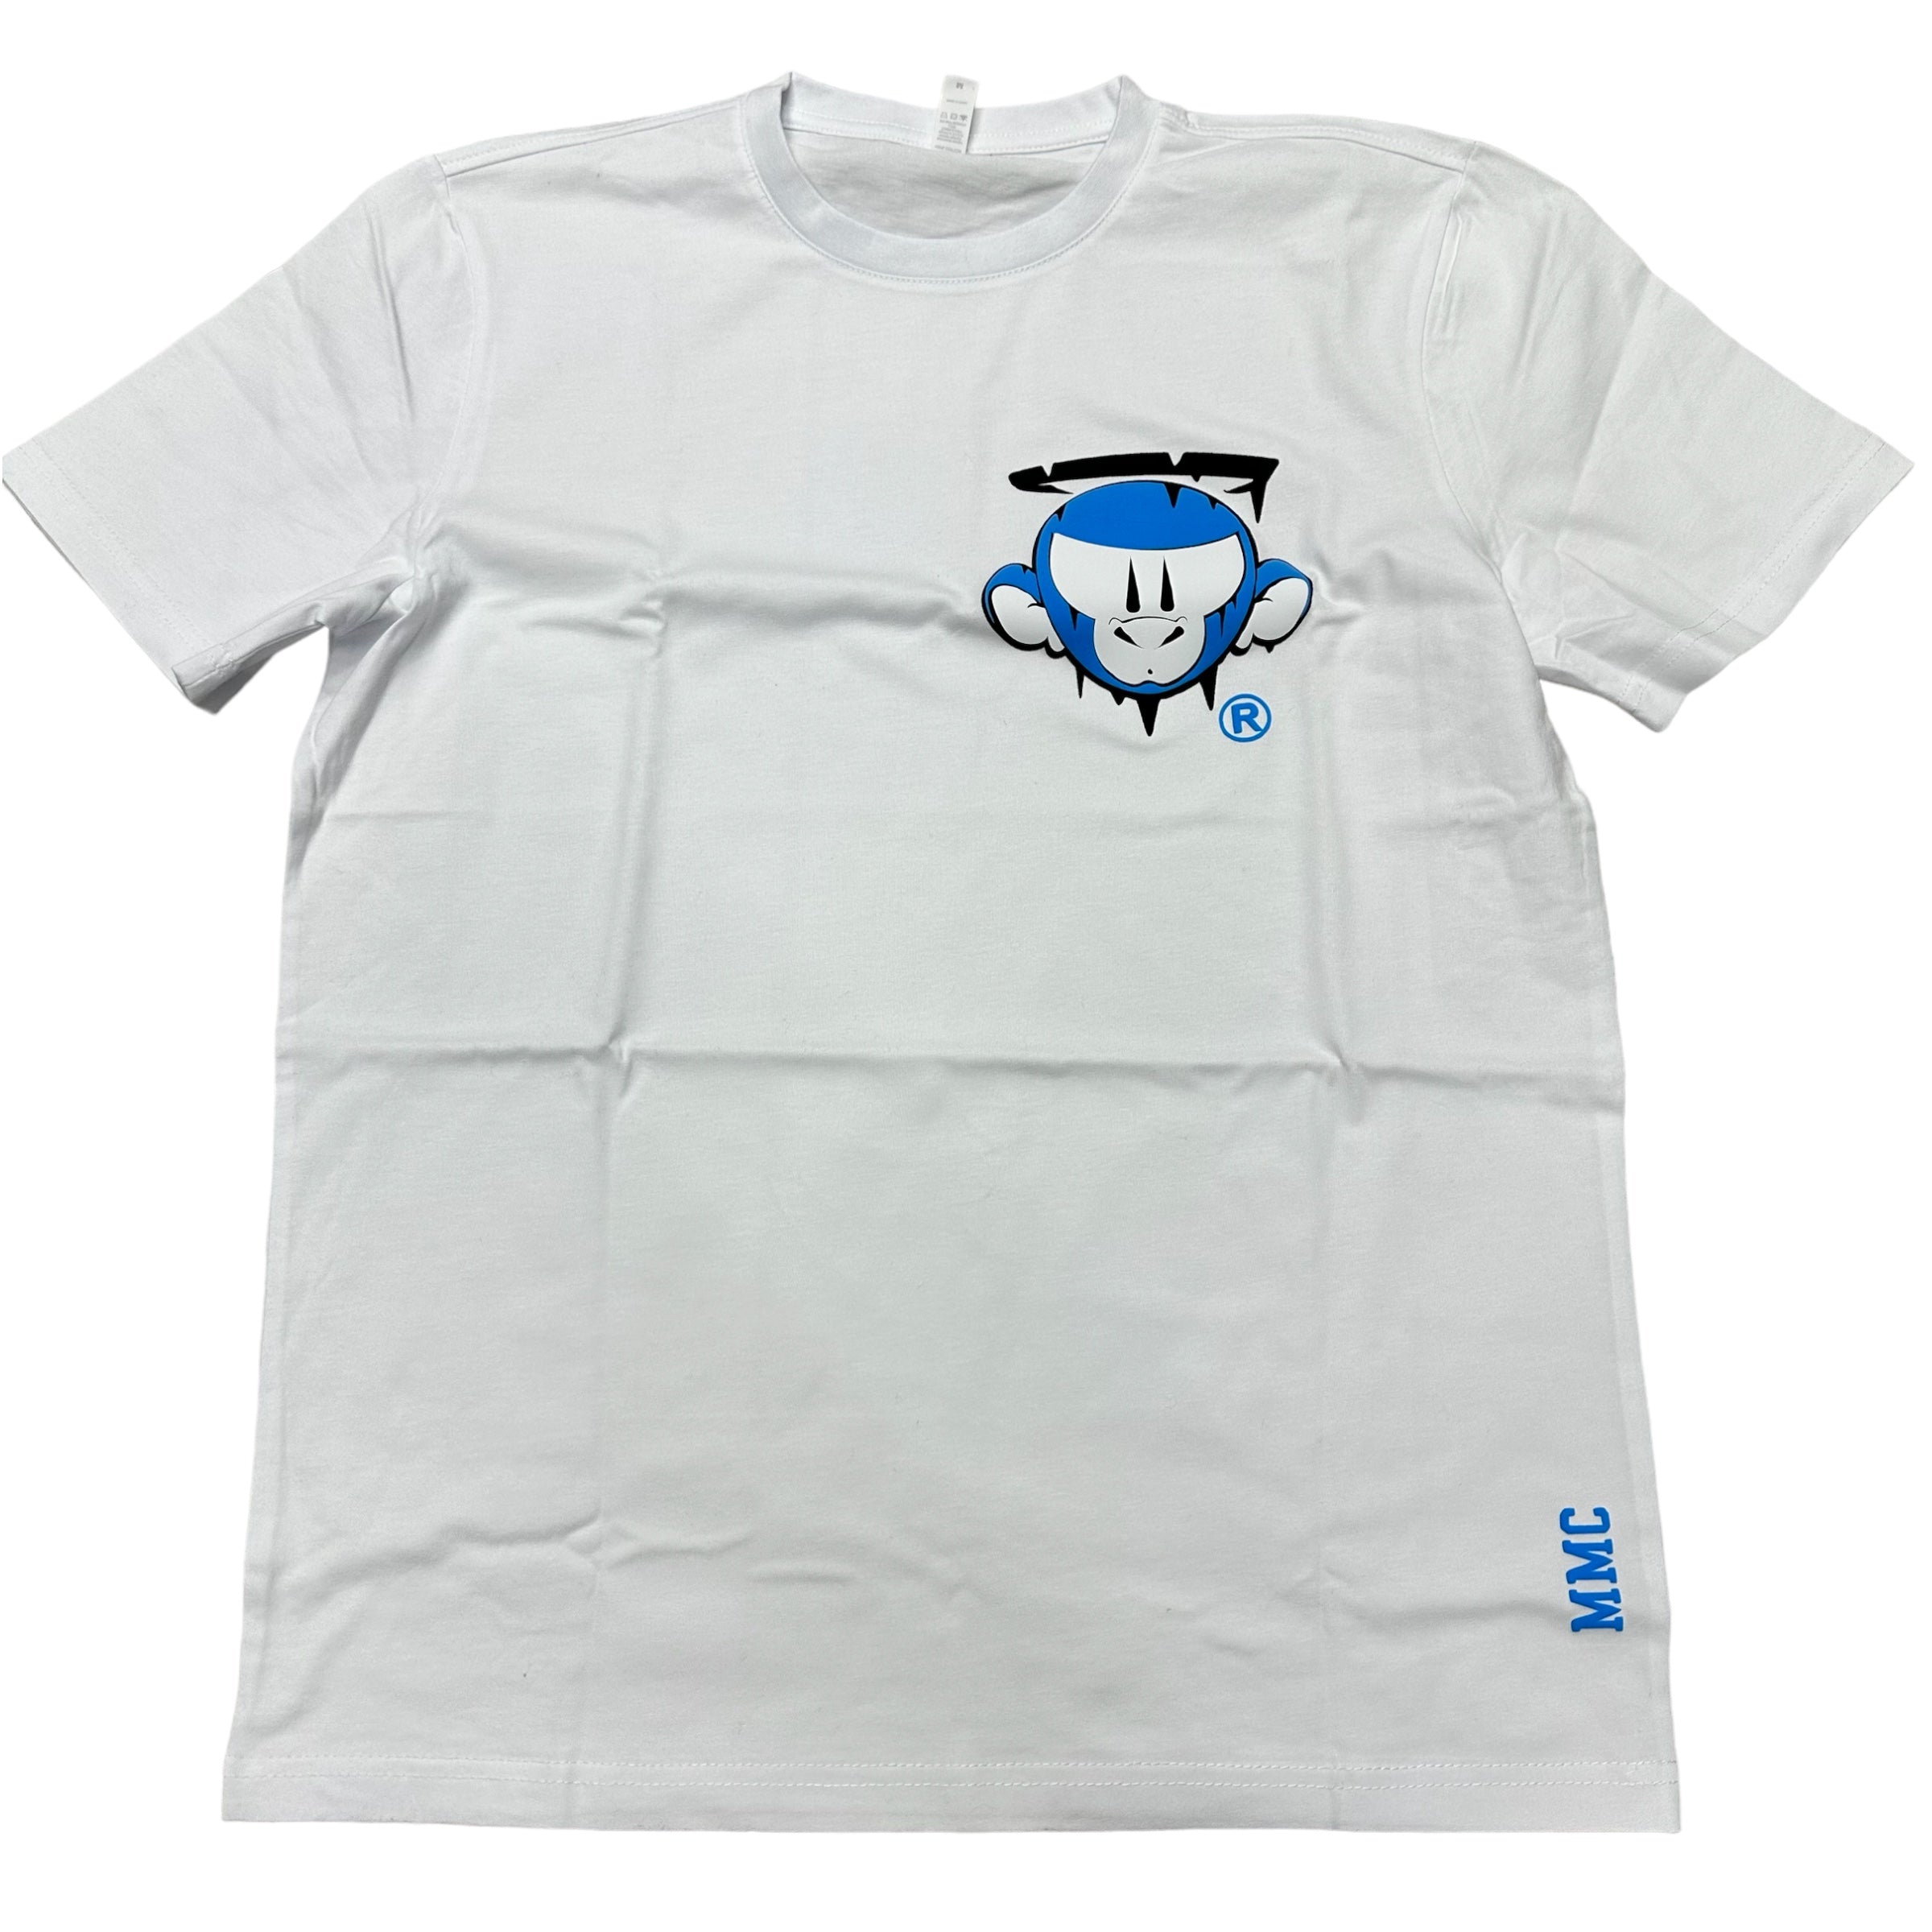 Monkey Money Logo Tee white unc